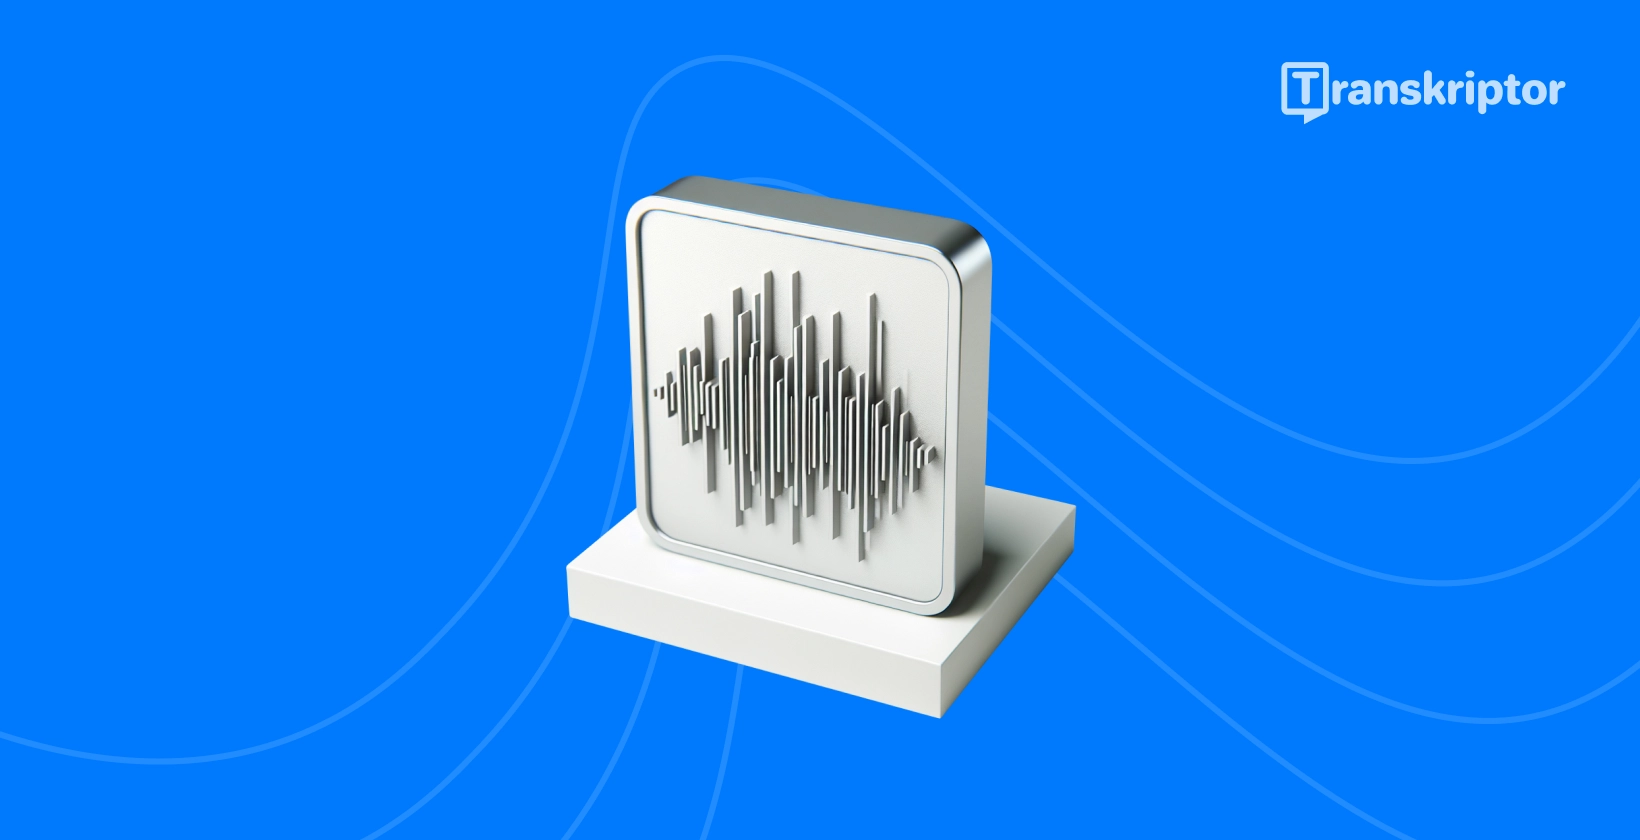 Ilustracija zvučnih valova na monitoru predstavlja proces transkripcije zvuka uživo kako je detaljno opisano u vodiču.